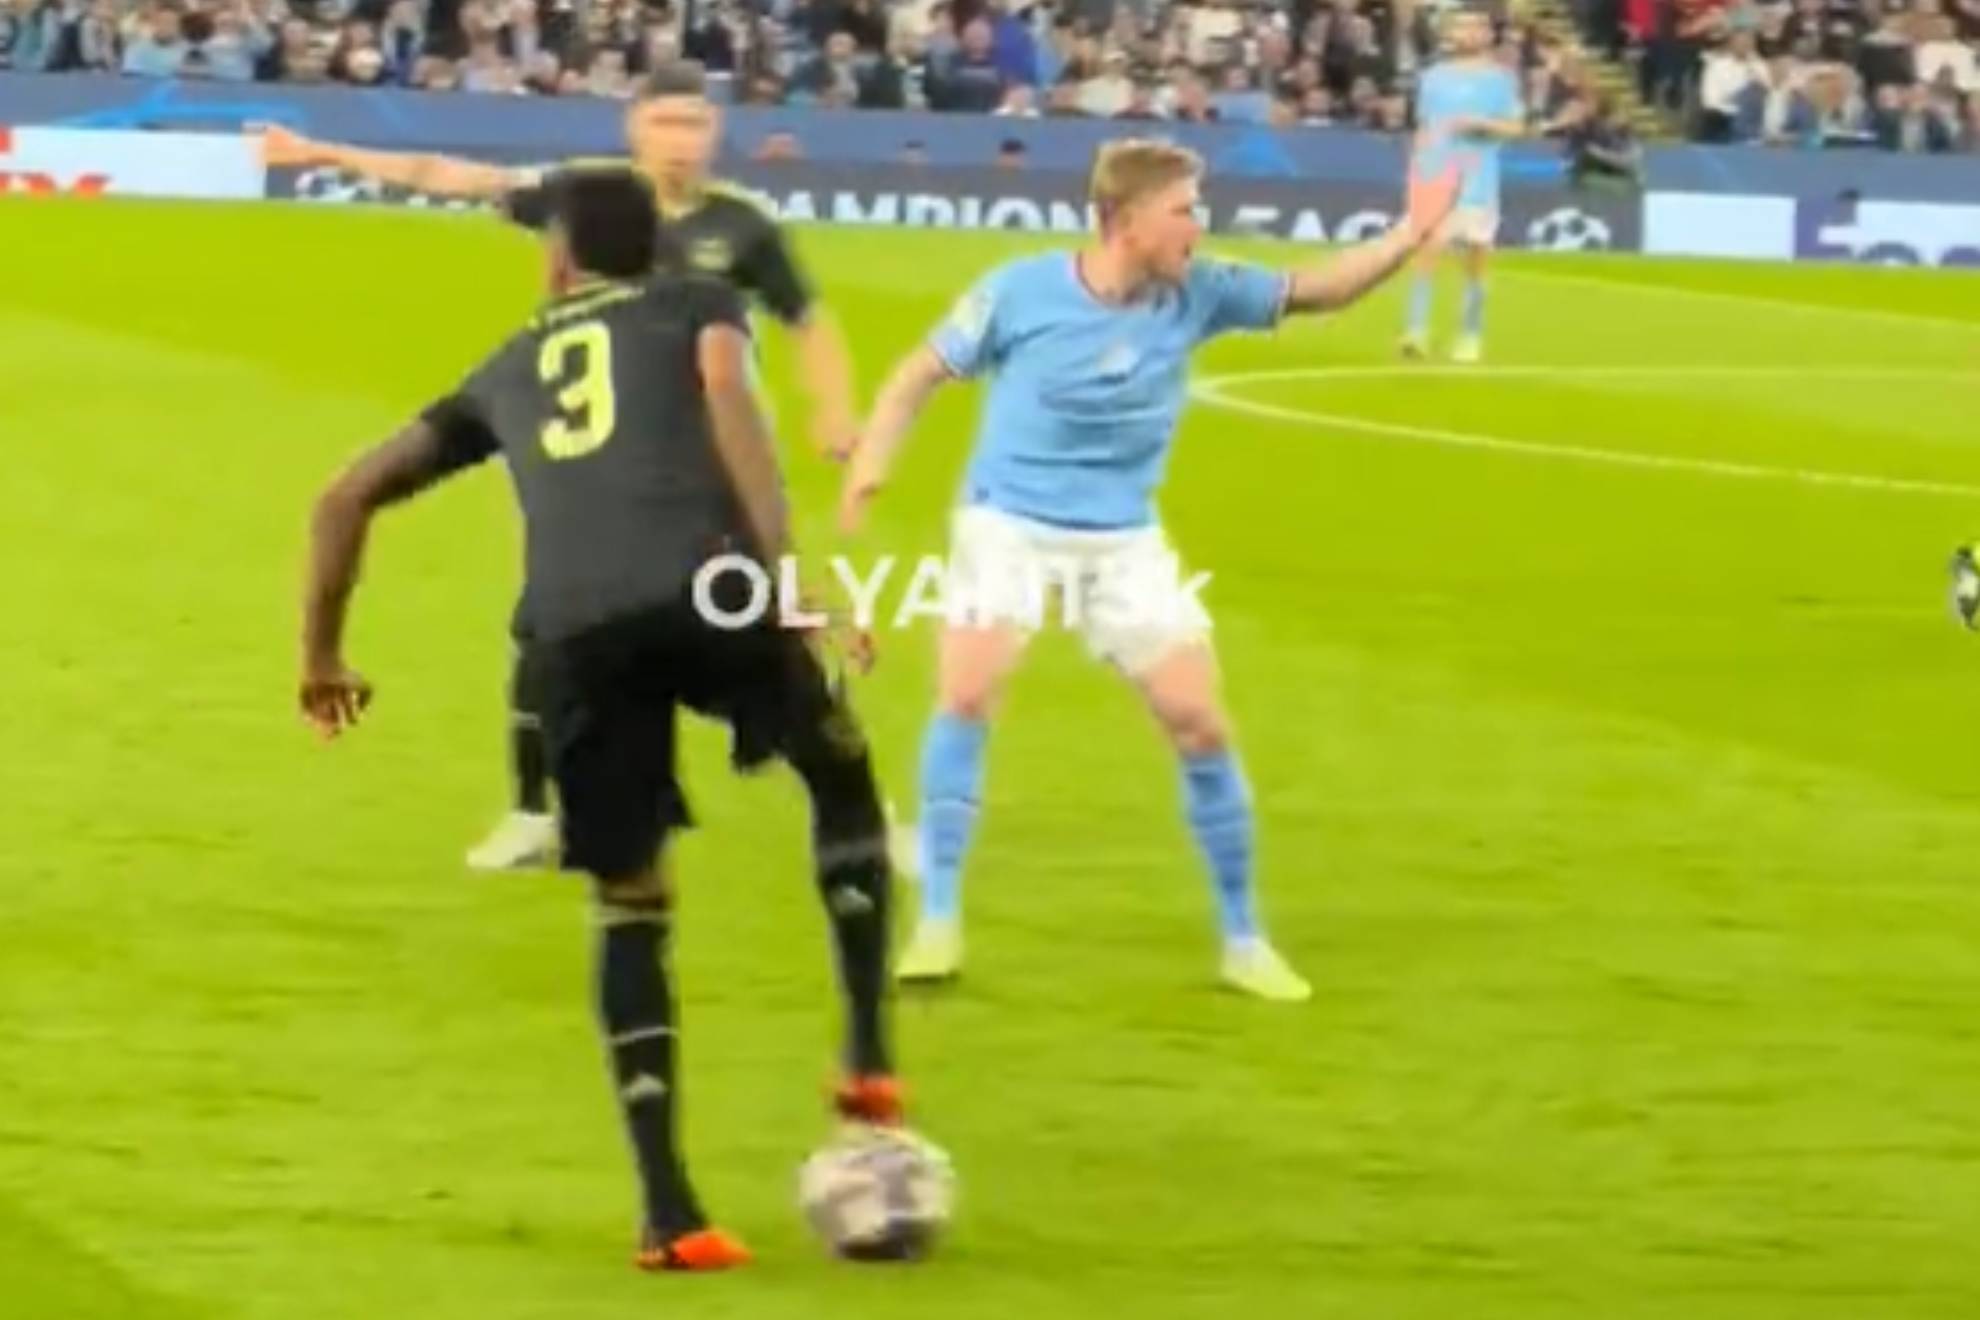 Revelan video del enfado monumental De Bruyne con Guardiola: "¡Cállate!"